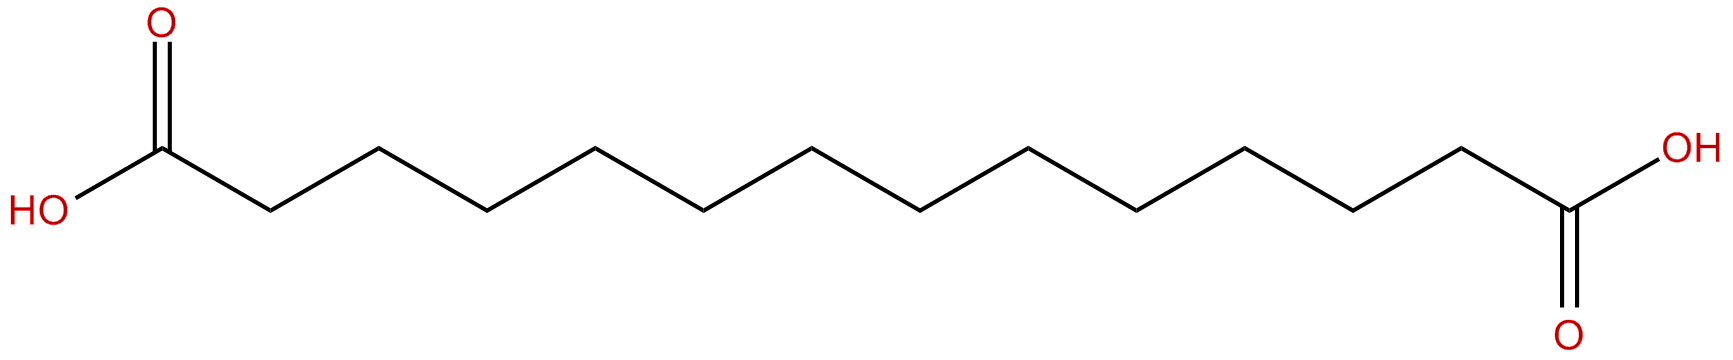 Image of tetradecanedioic acid